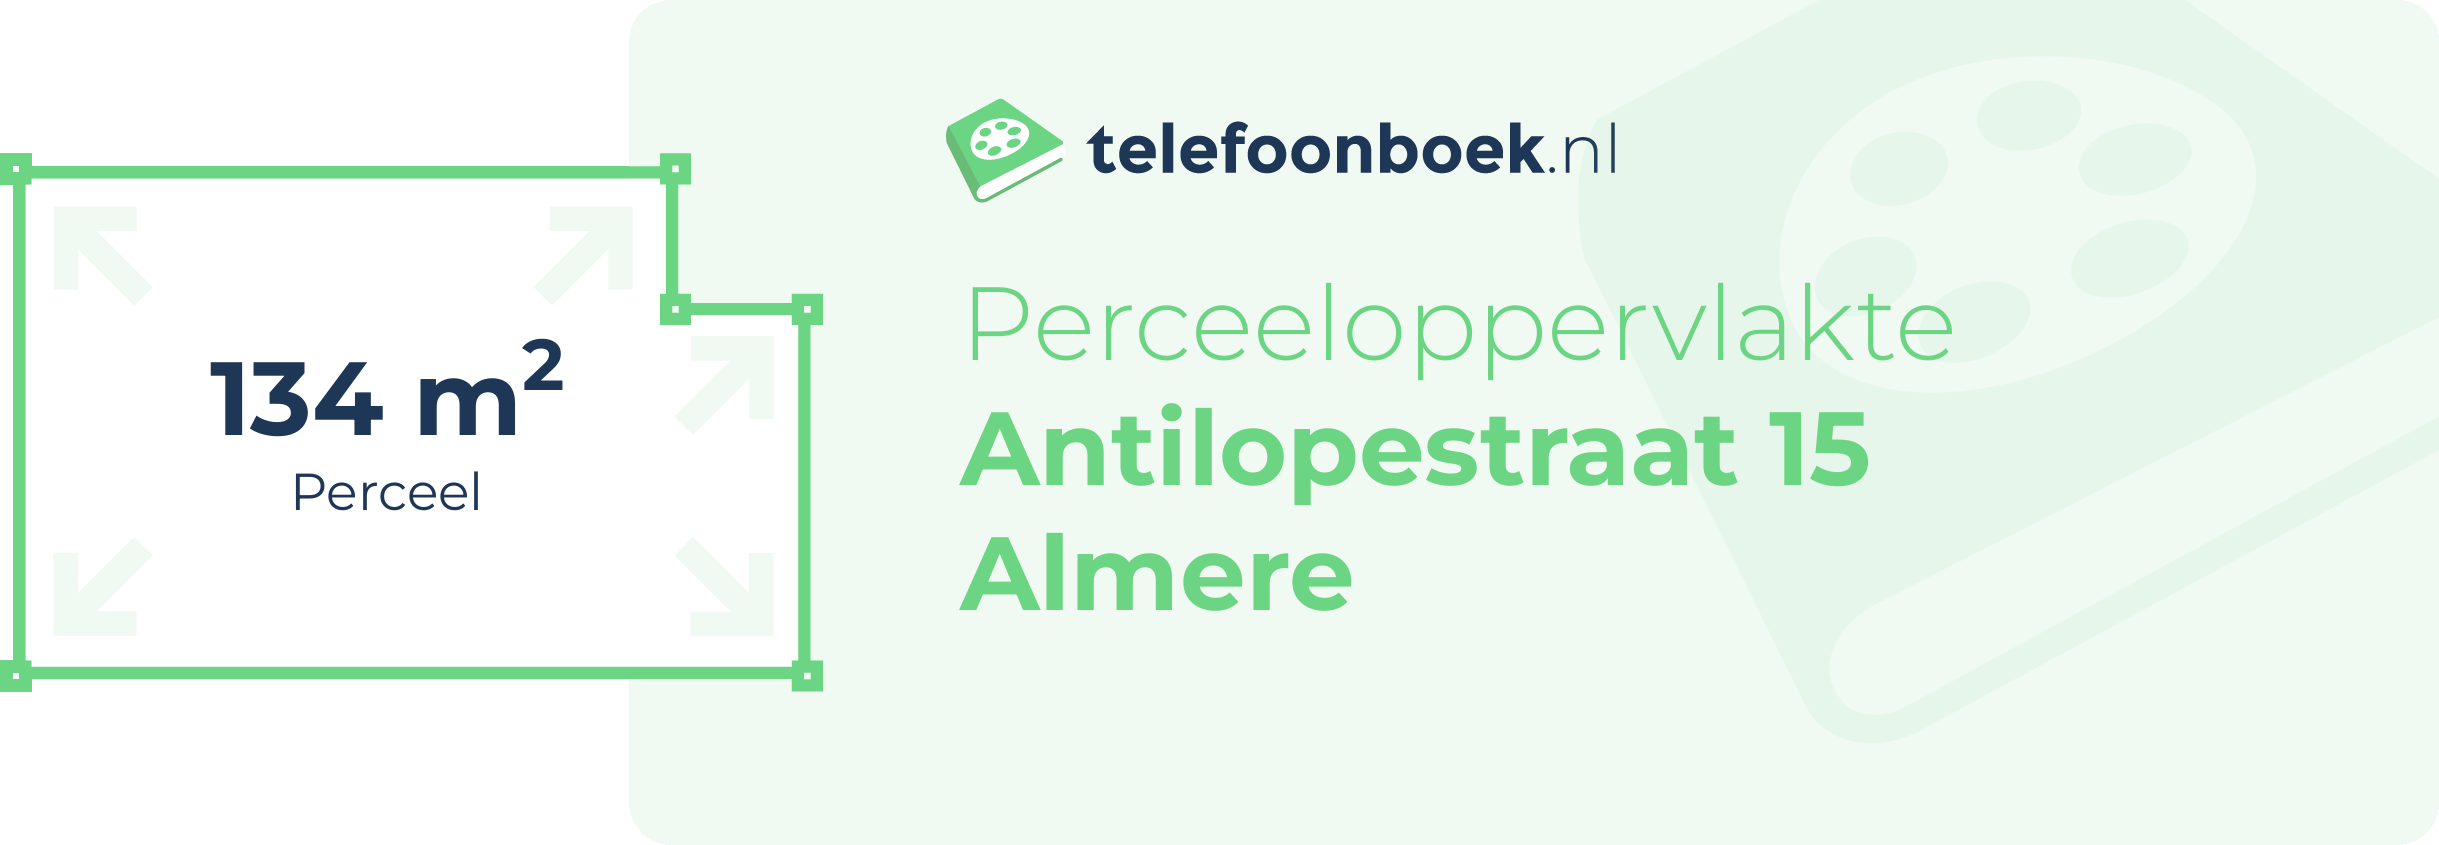 Perceeloppervlakte Antilopestraat 15 Almere